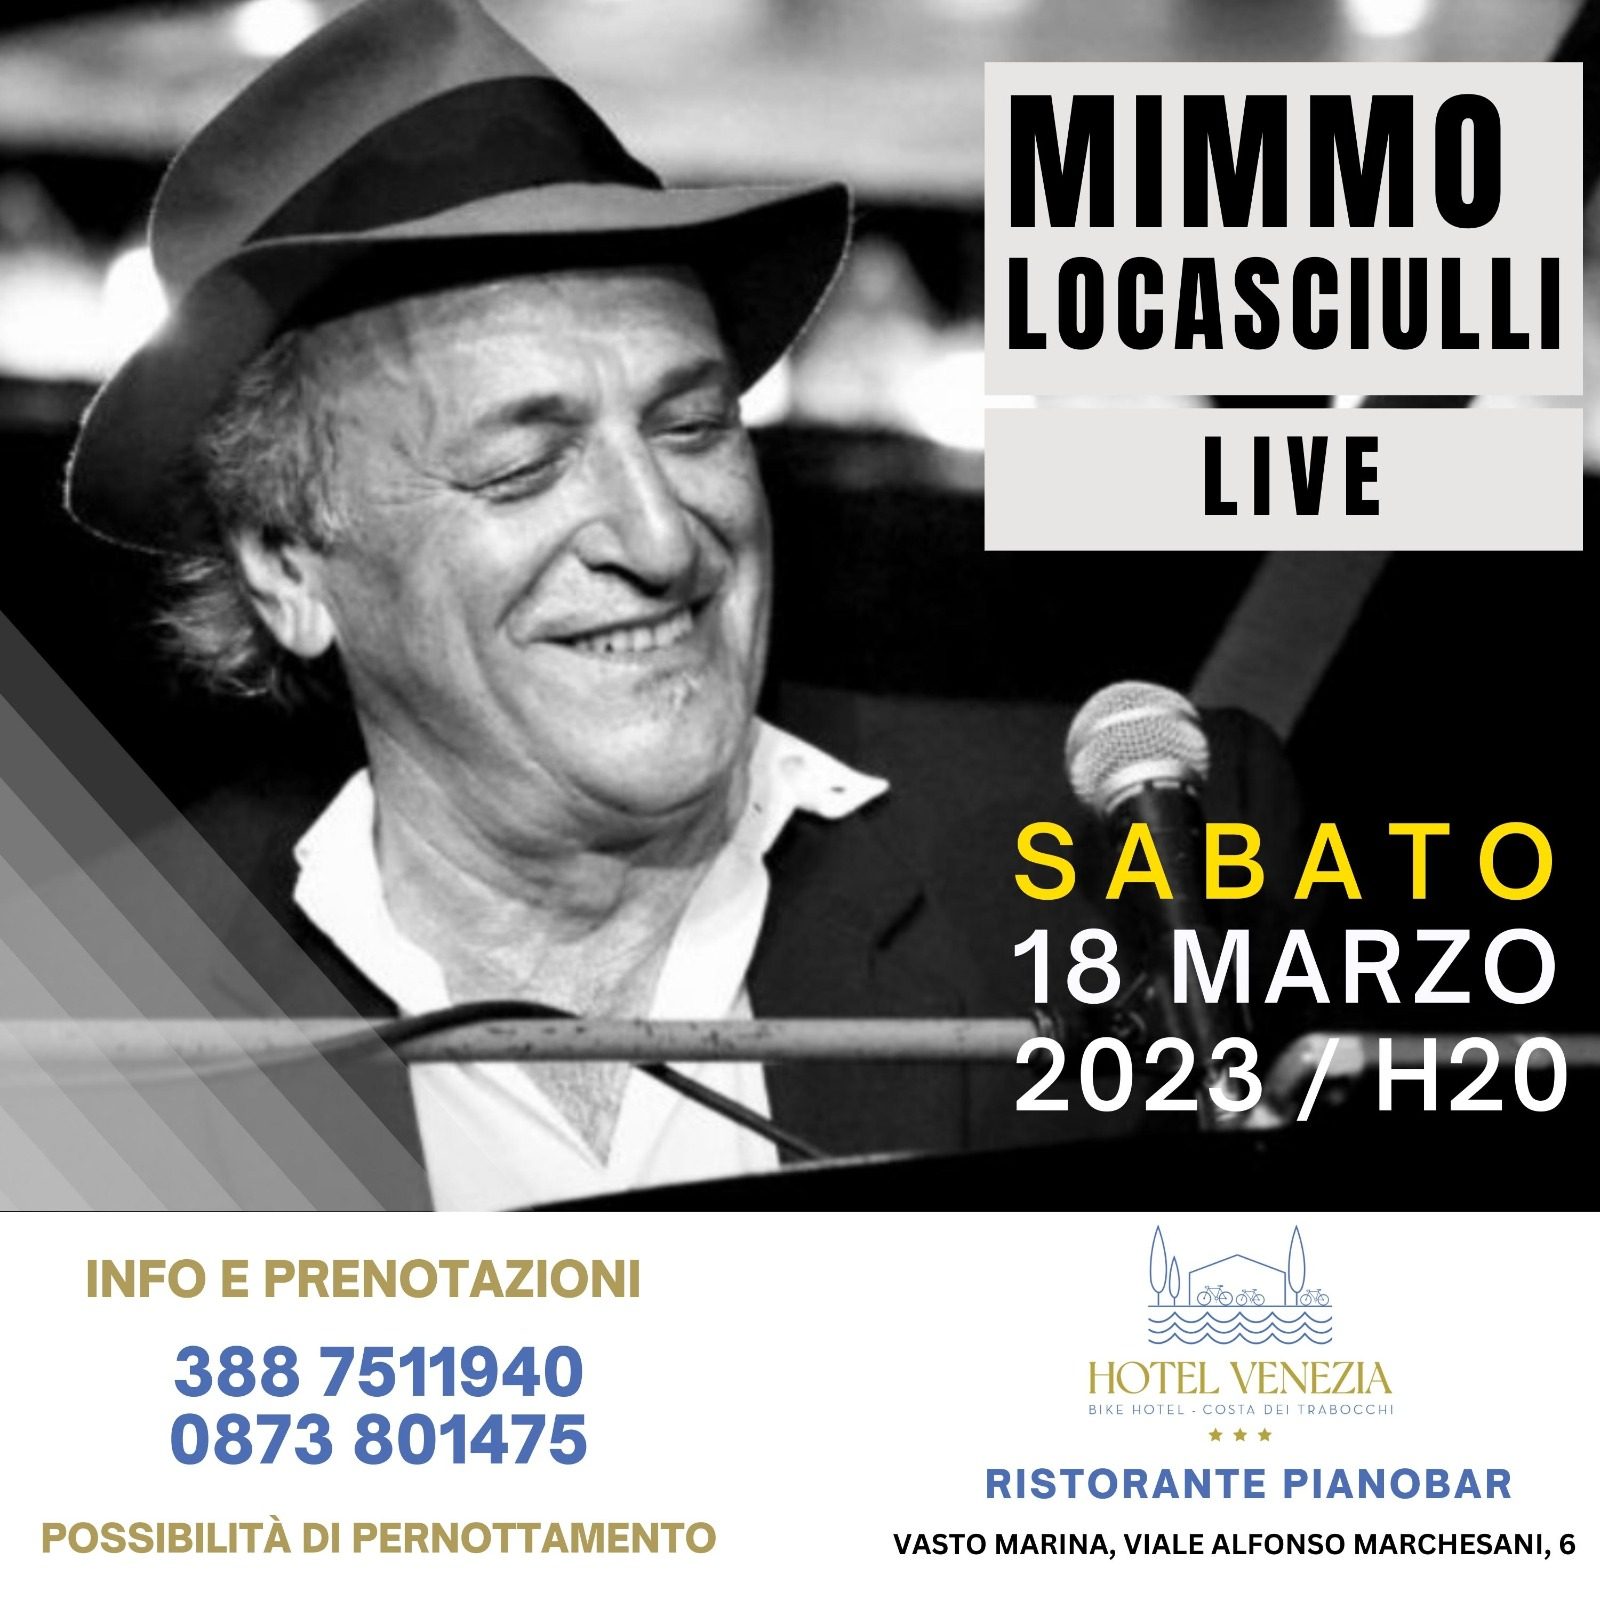 Mimmo Locasciulli live